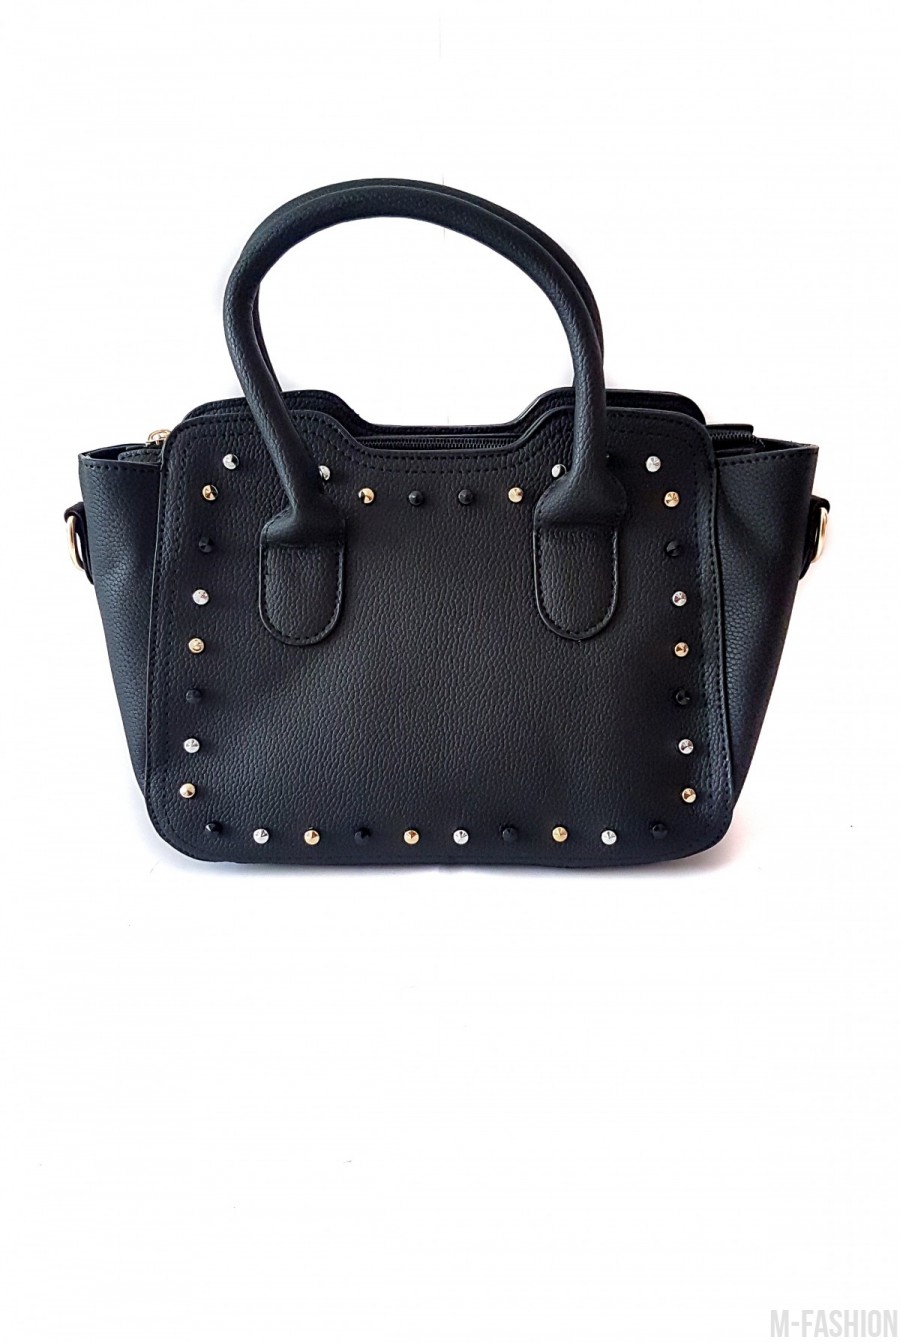 Черная женская сумочка с золотистыми и черными металлическими шипами - Фото 1